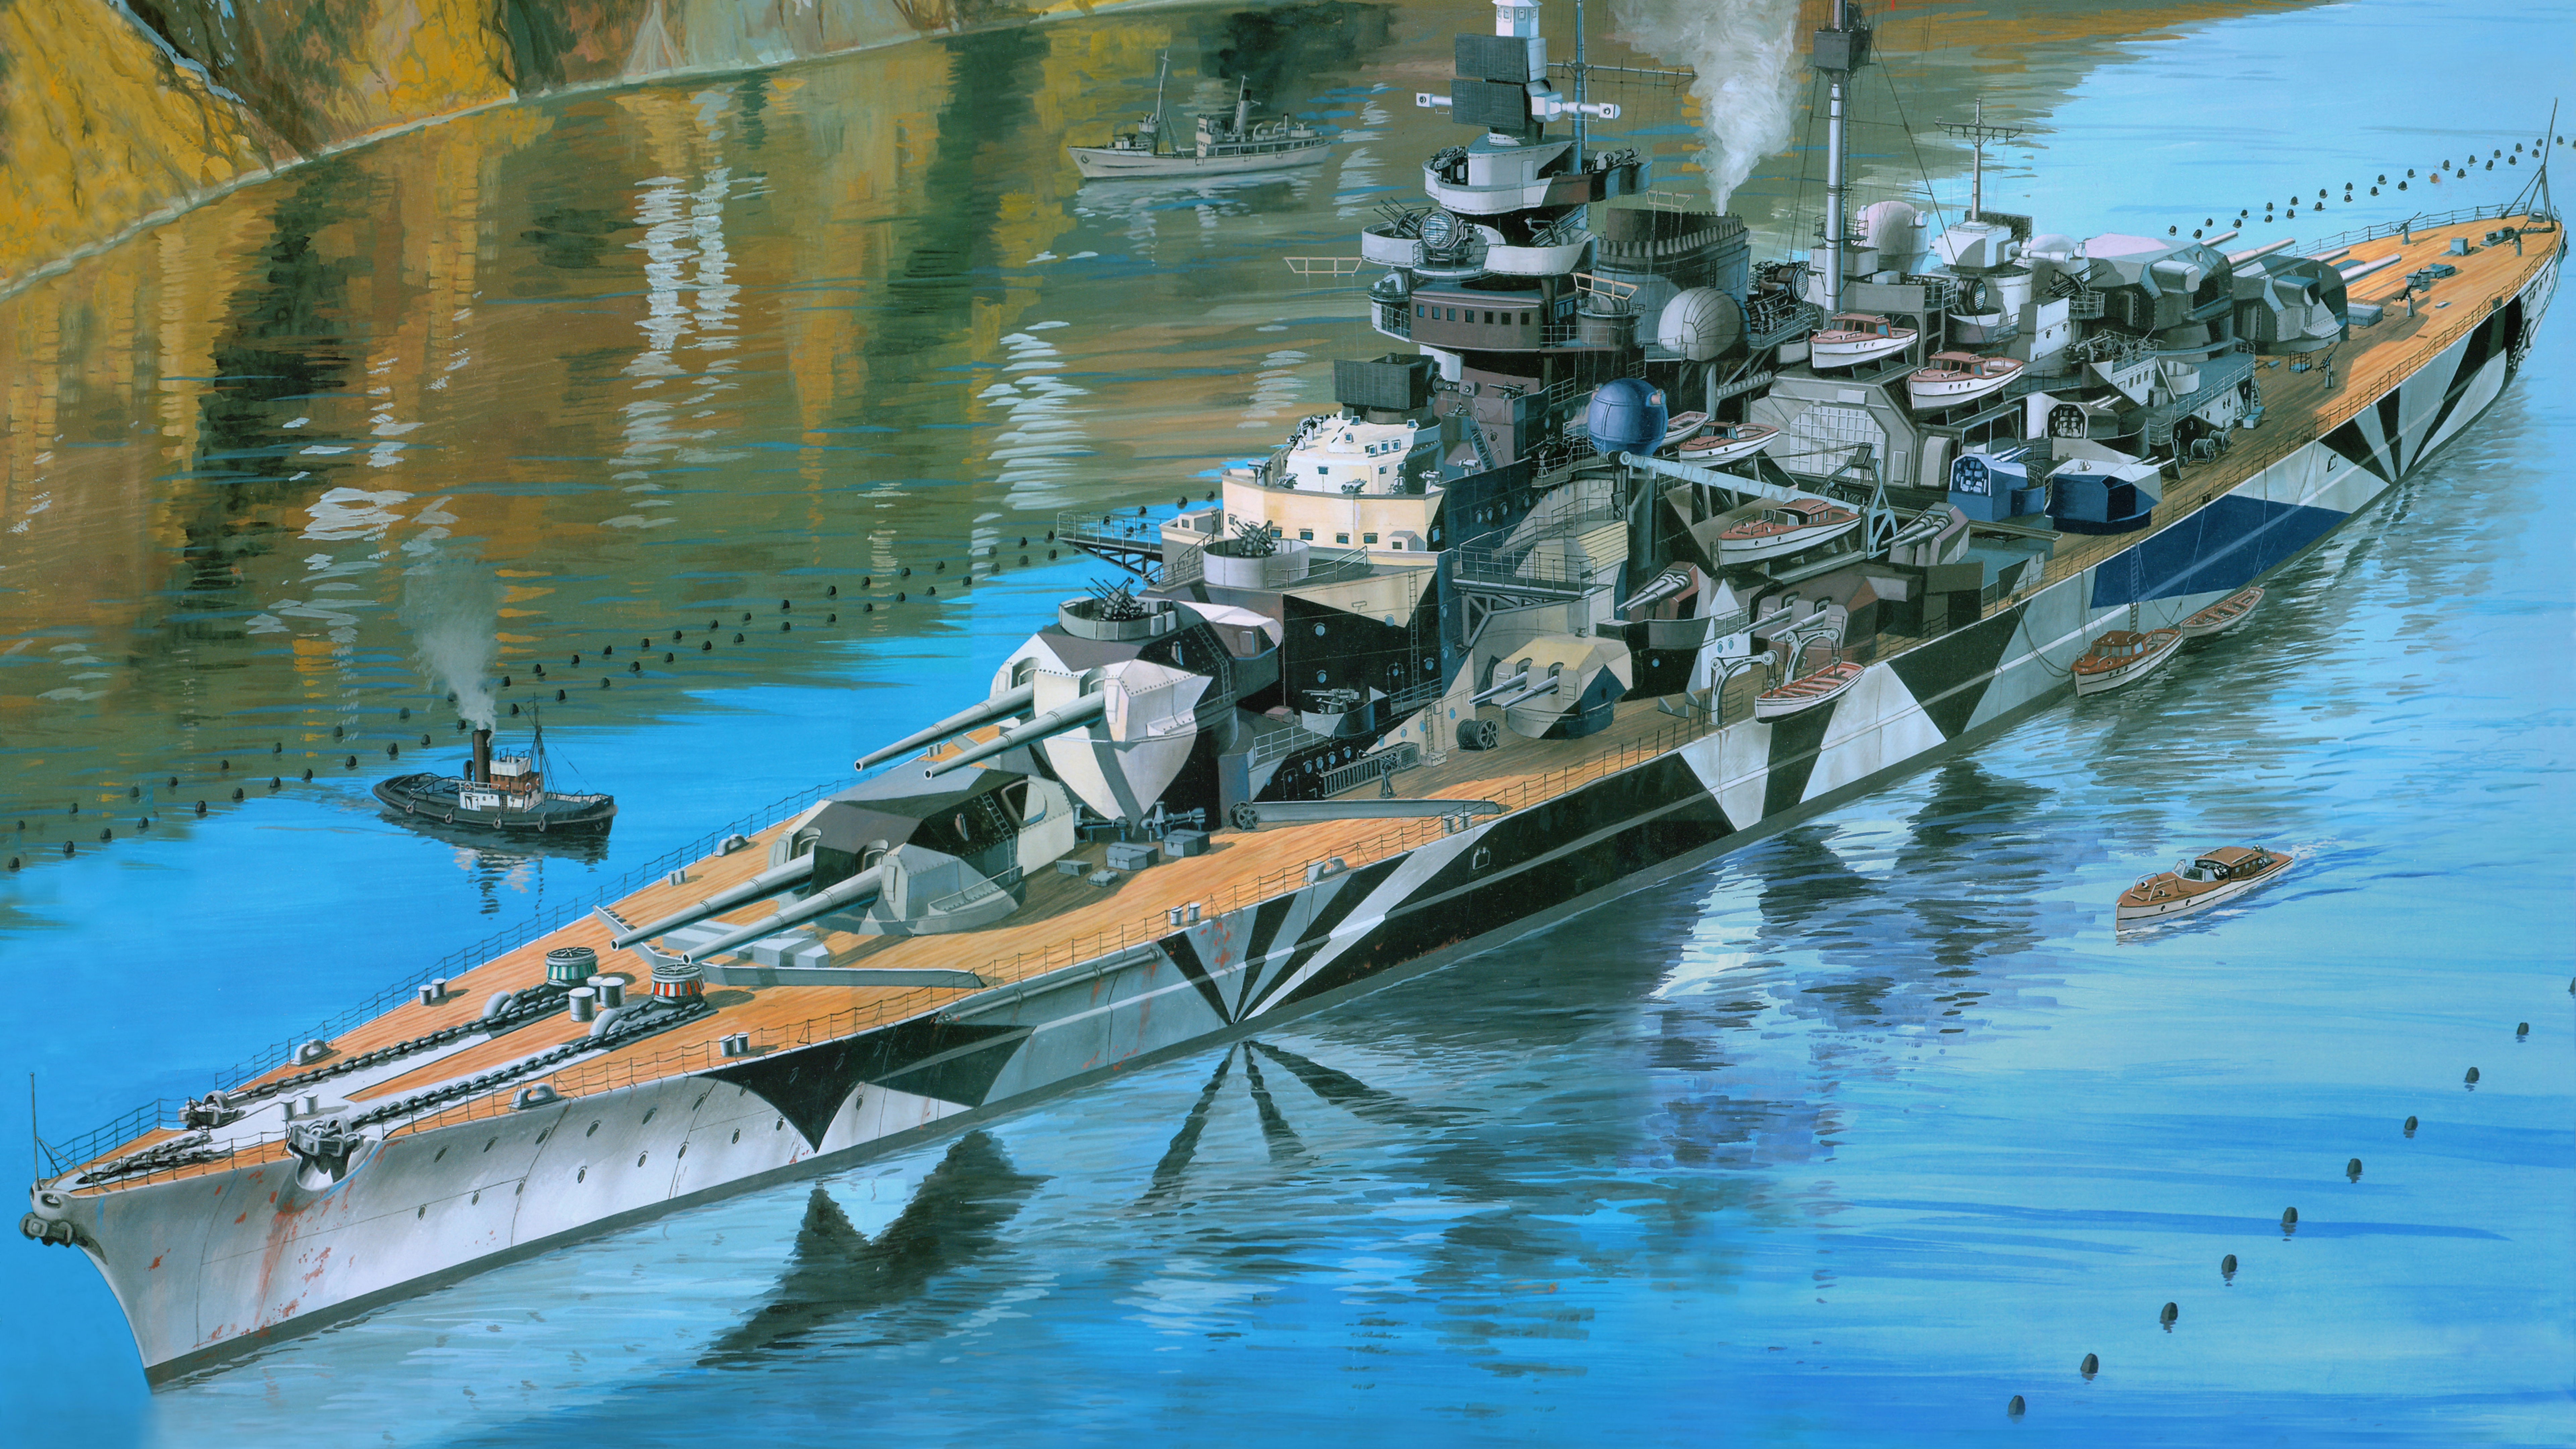 Acorazado Alemán Tirpitz, Revell, el Modelo de Plástico, Acorazado Alemán Bismarck, Barco. Wallpaper in 7680x4320 Resolution